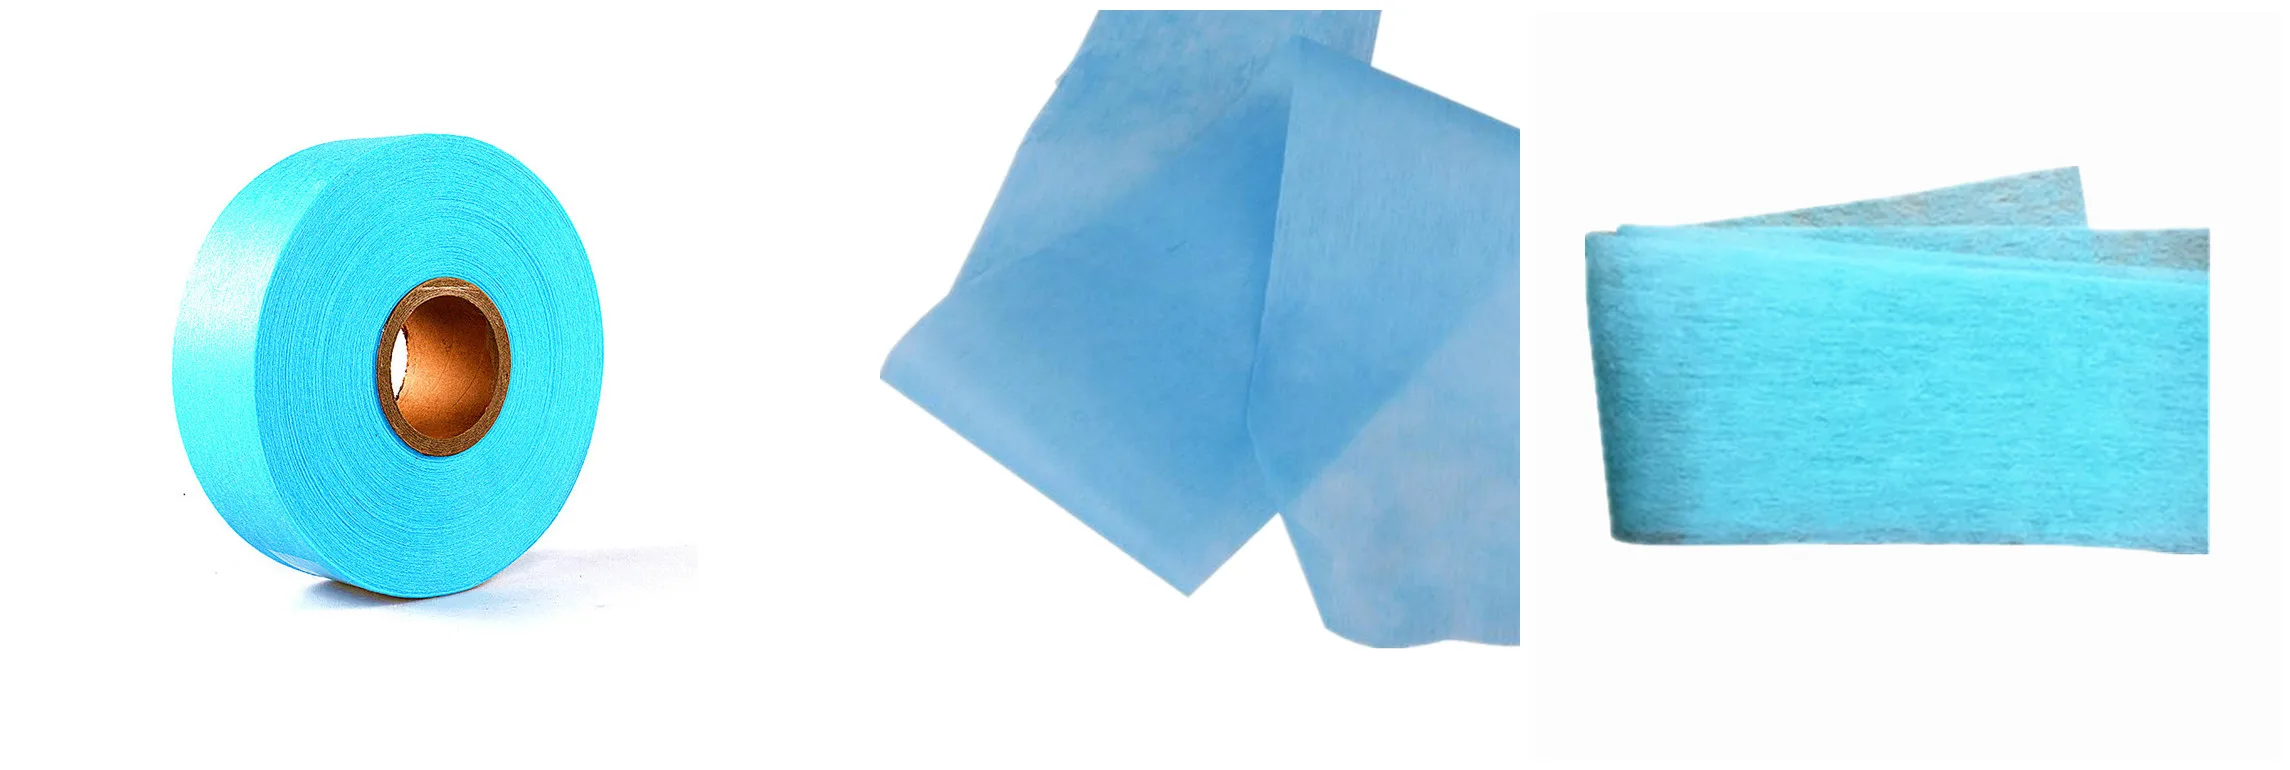 Fralda descartável ADL grande absorvente azul com tecido não tecido